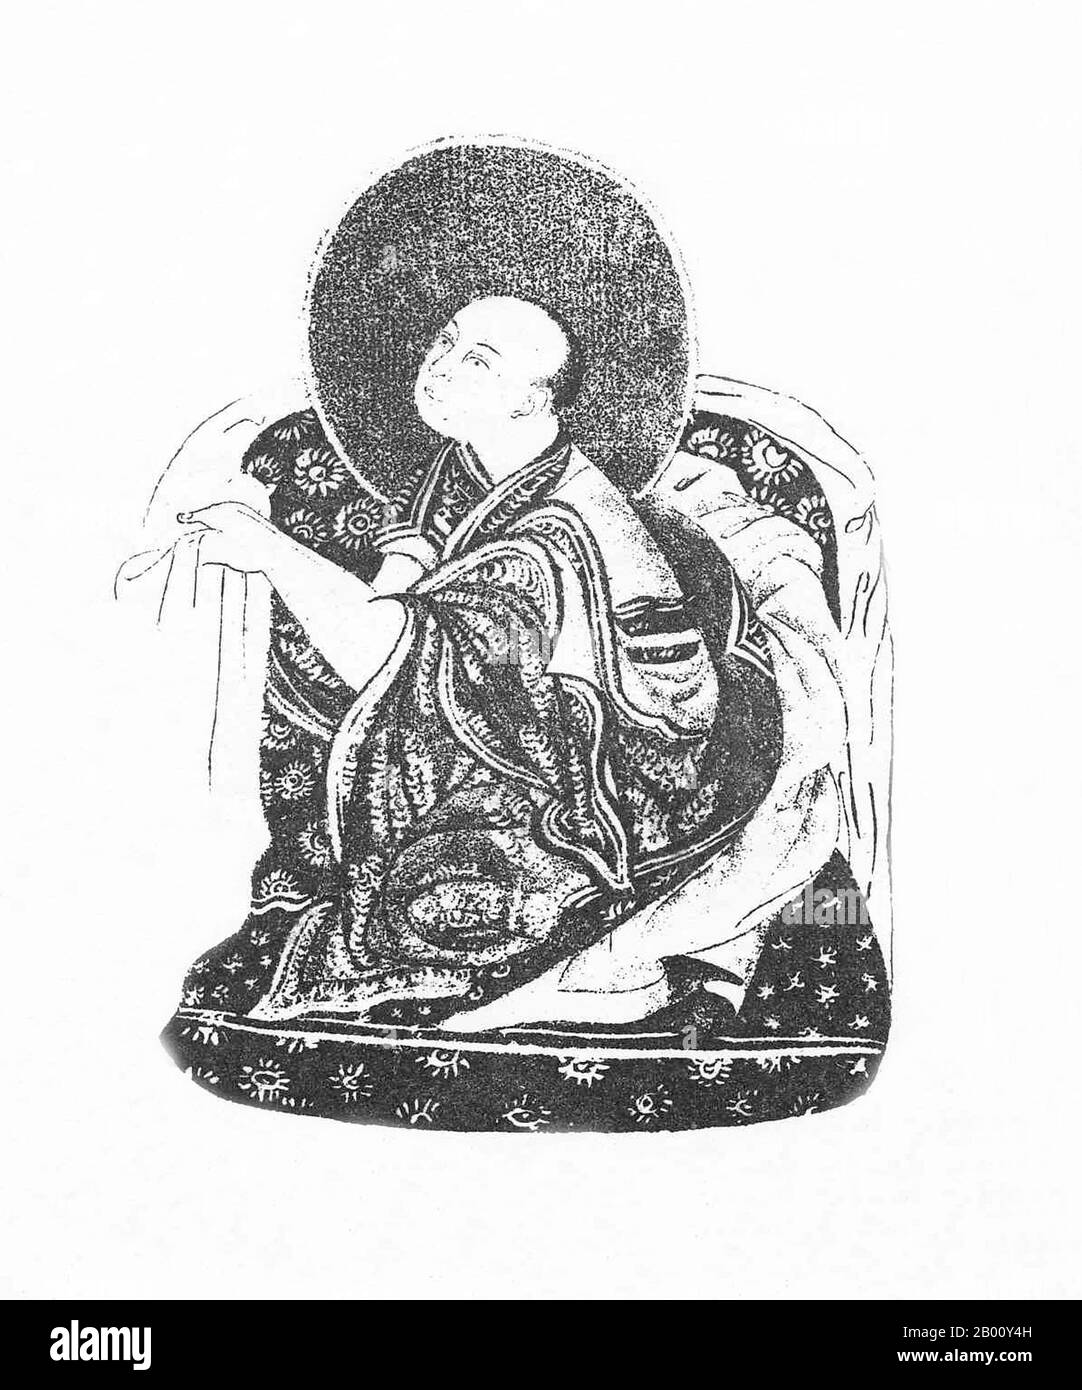 Cina/Tibet: Khedrup Gelek Pelzang, 1° Panchen lama (1385-1438), c.. 1882 Khedrup Gelek Pelzang (1385–1438), meglio conosciuto come Khedrup JE, il 1° Panchen lama, fu uno dei principali discepoli di lama Tsongkhapa (fondatore della tradizione Gelug del Buddismo Tibetano). Foto Stock